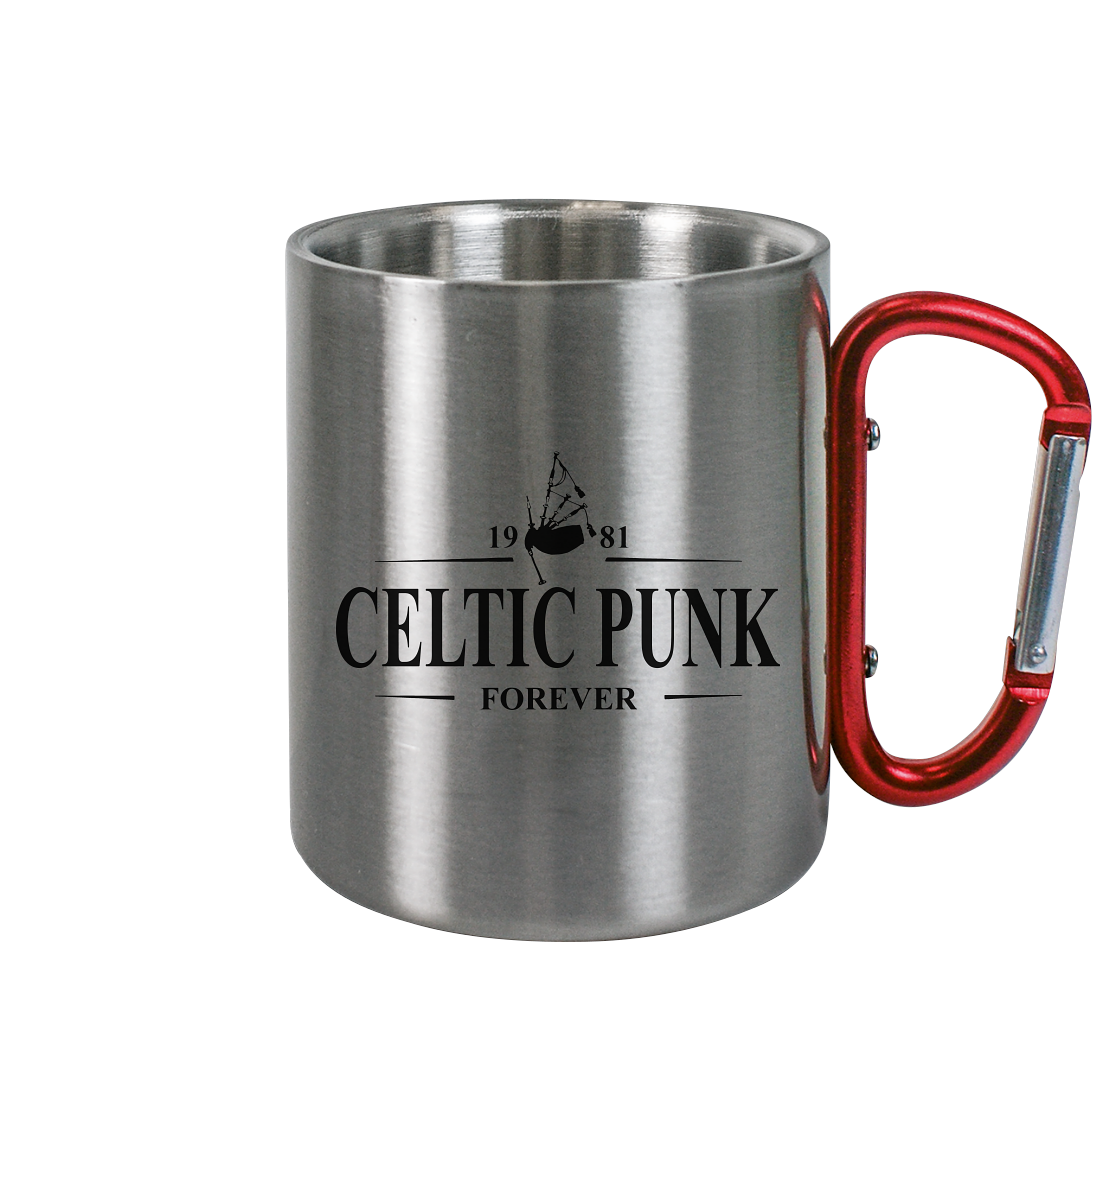 Celtic Punk "Forever" - Edelstahl Tasse